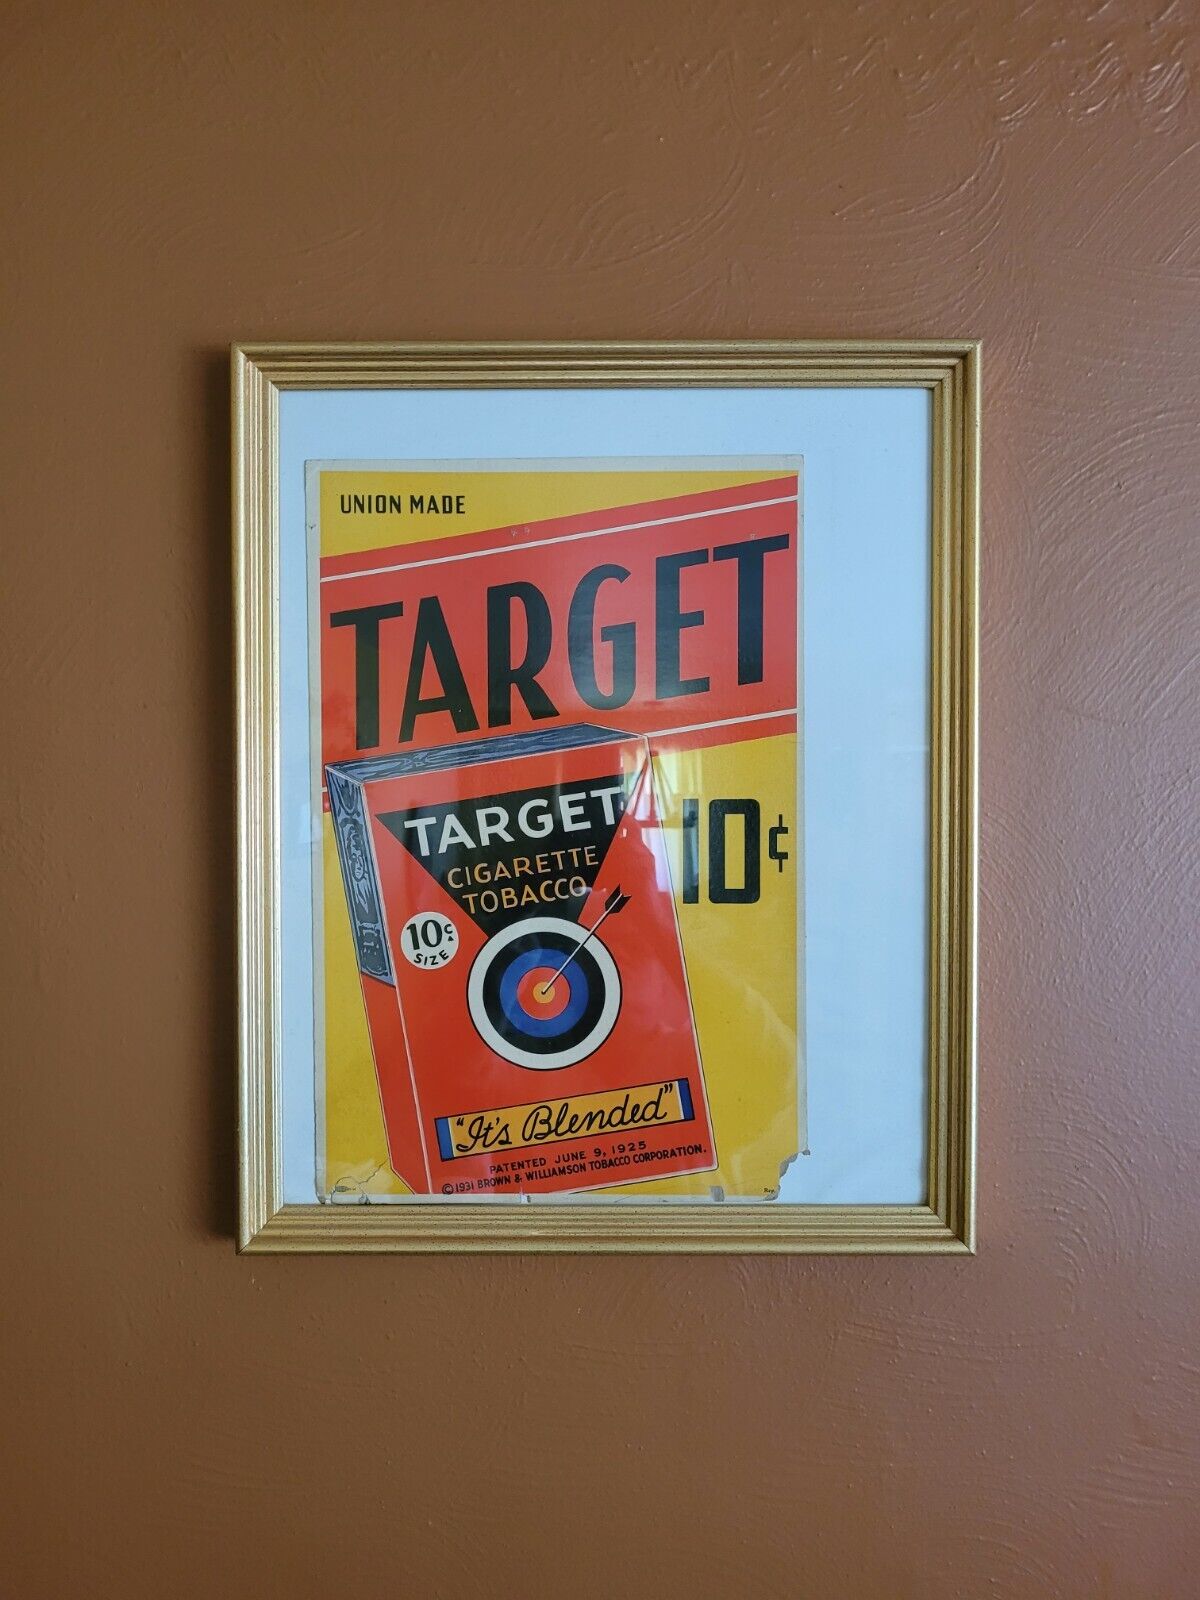 ORIGINAL 1931 Target 10 Cent Cigarette Tobacco Advertising Cardboard Sign Poster